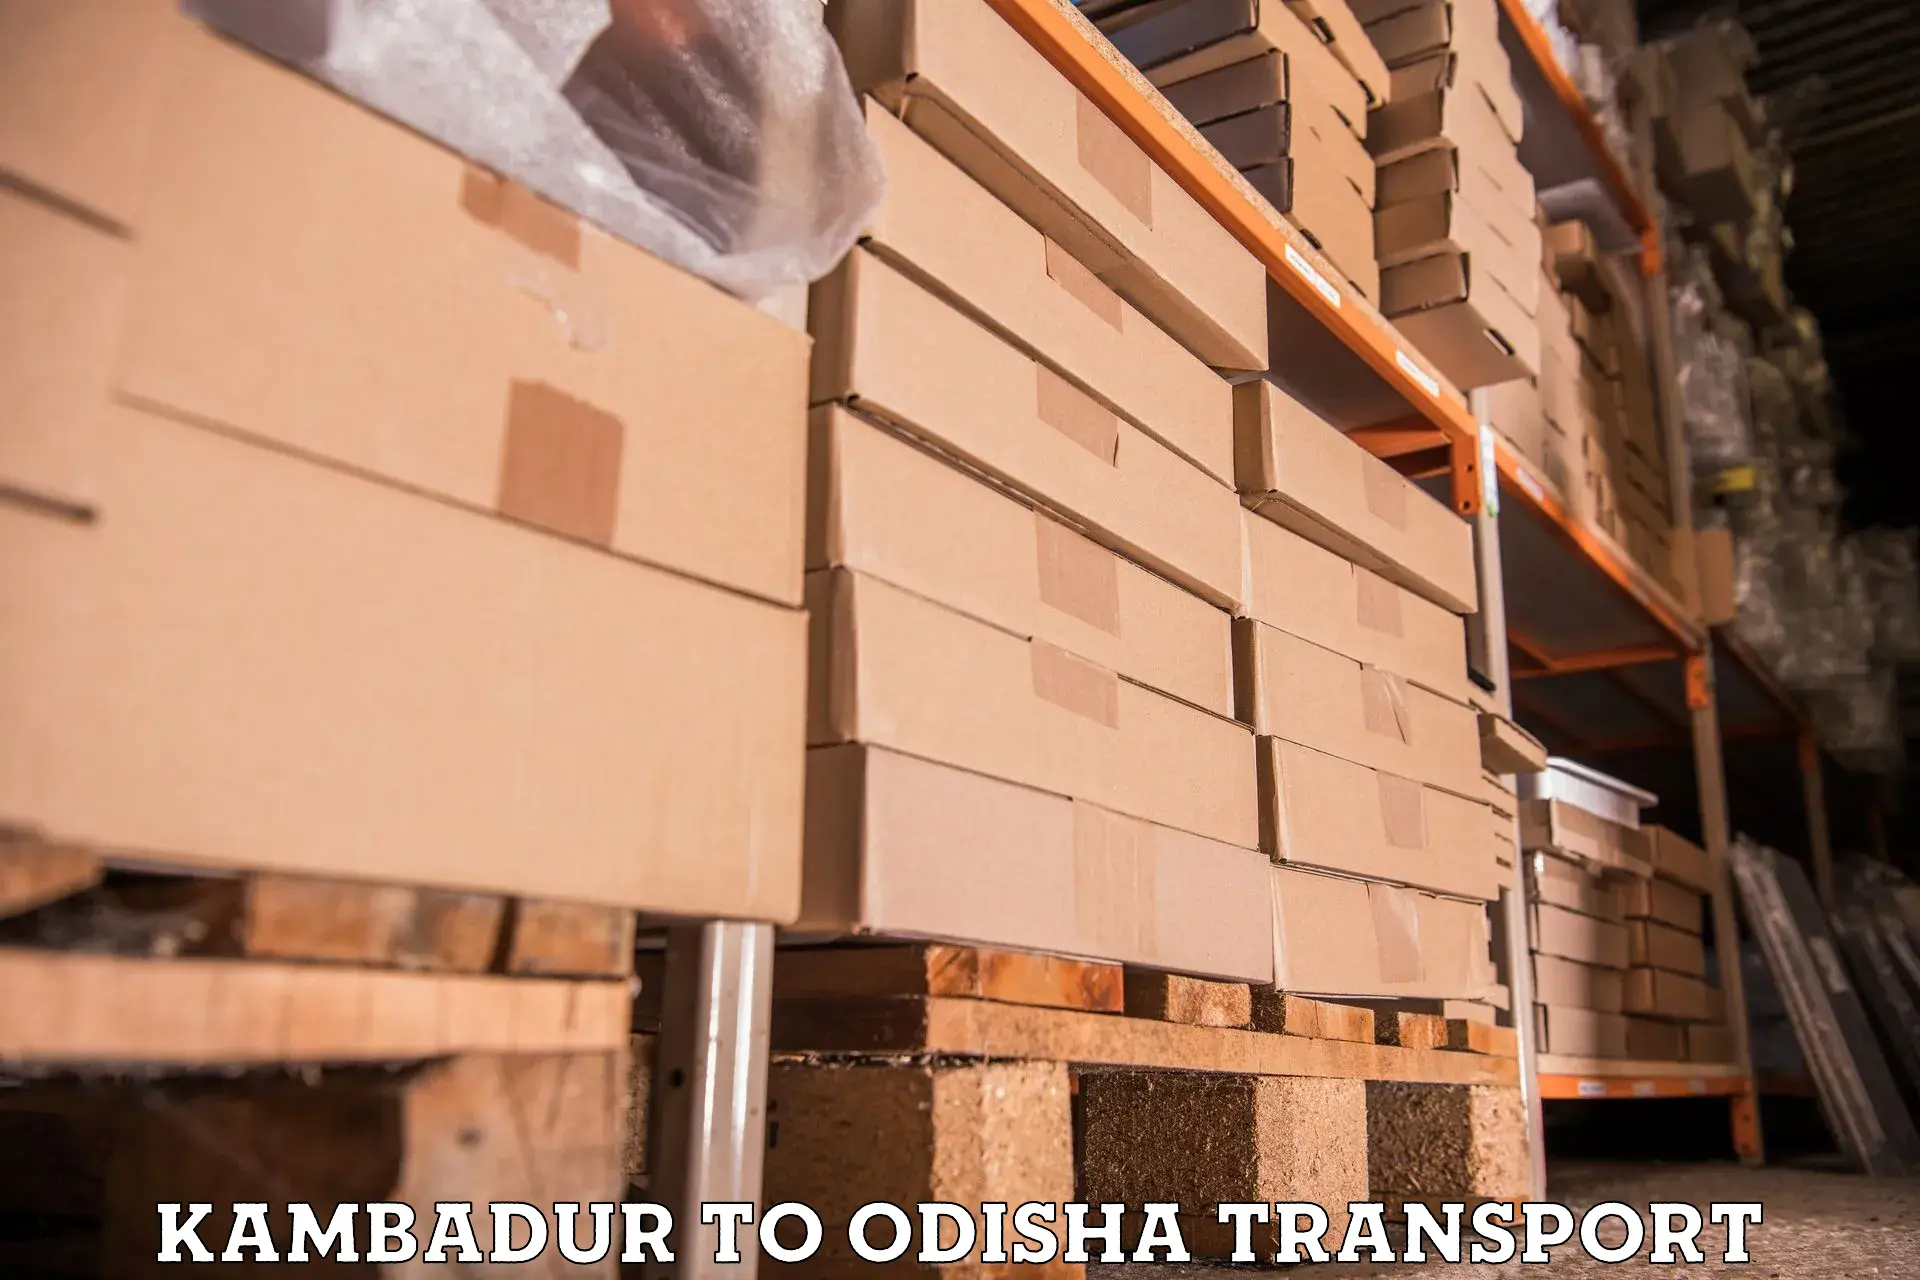 Furniture transport service Kambadur to Kalahandi